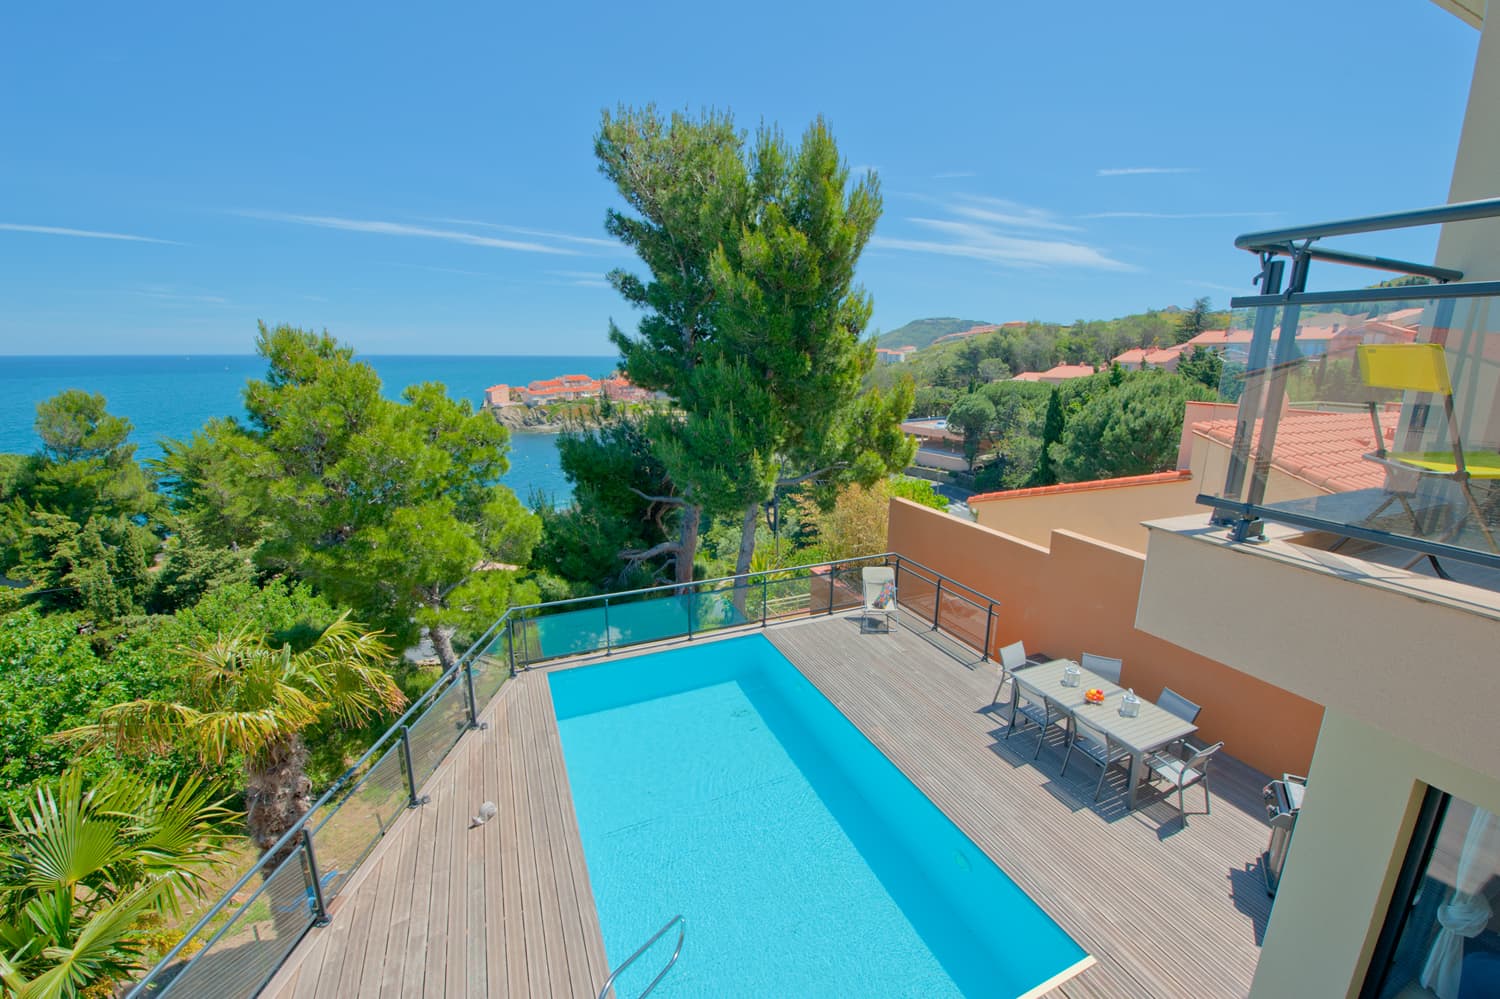 Villa de vacances avec vue sur la mer et piscine privée dans le sud de la France | Villa Impériale